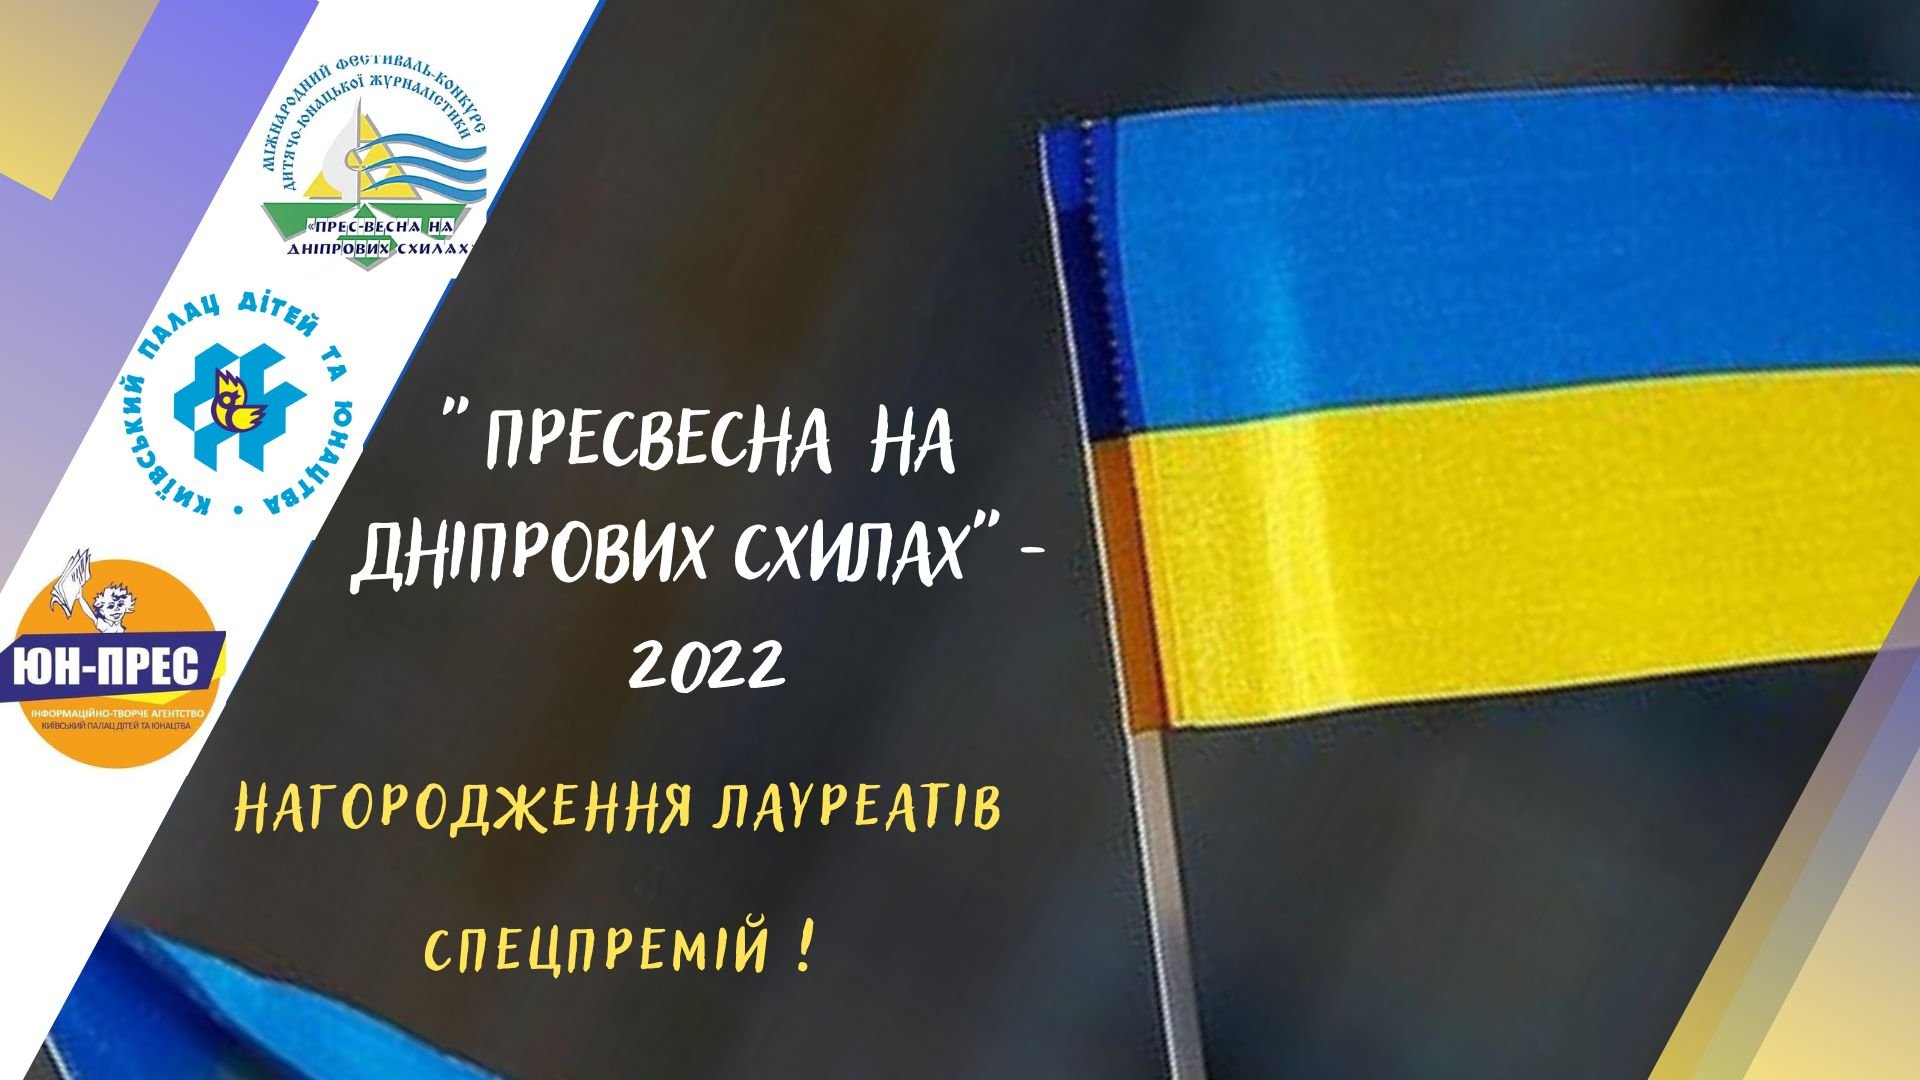 Міжнародний фестиваль «Прес-весна на Дніпровських схилах» – 2022, м. Київ